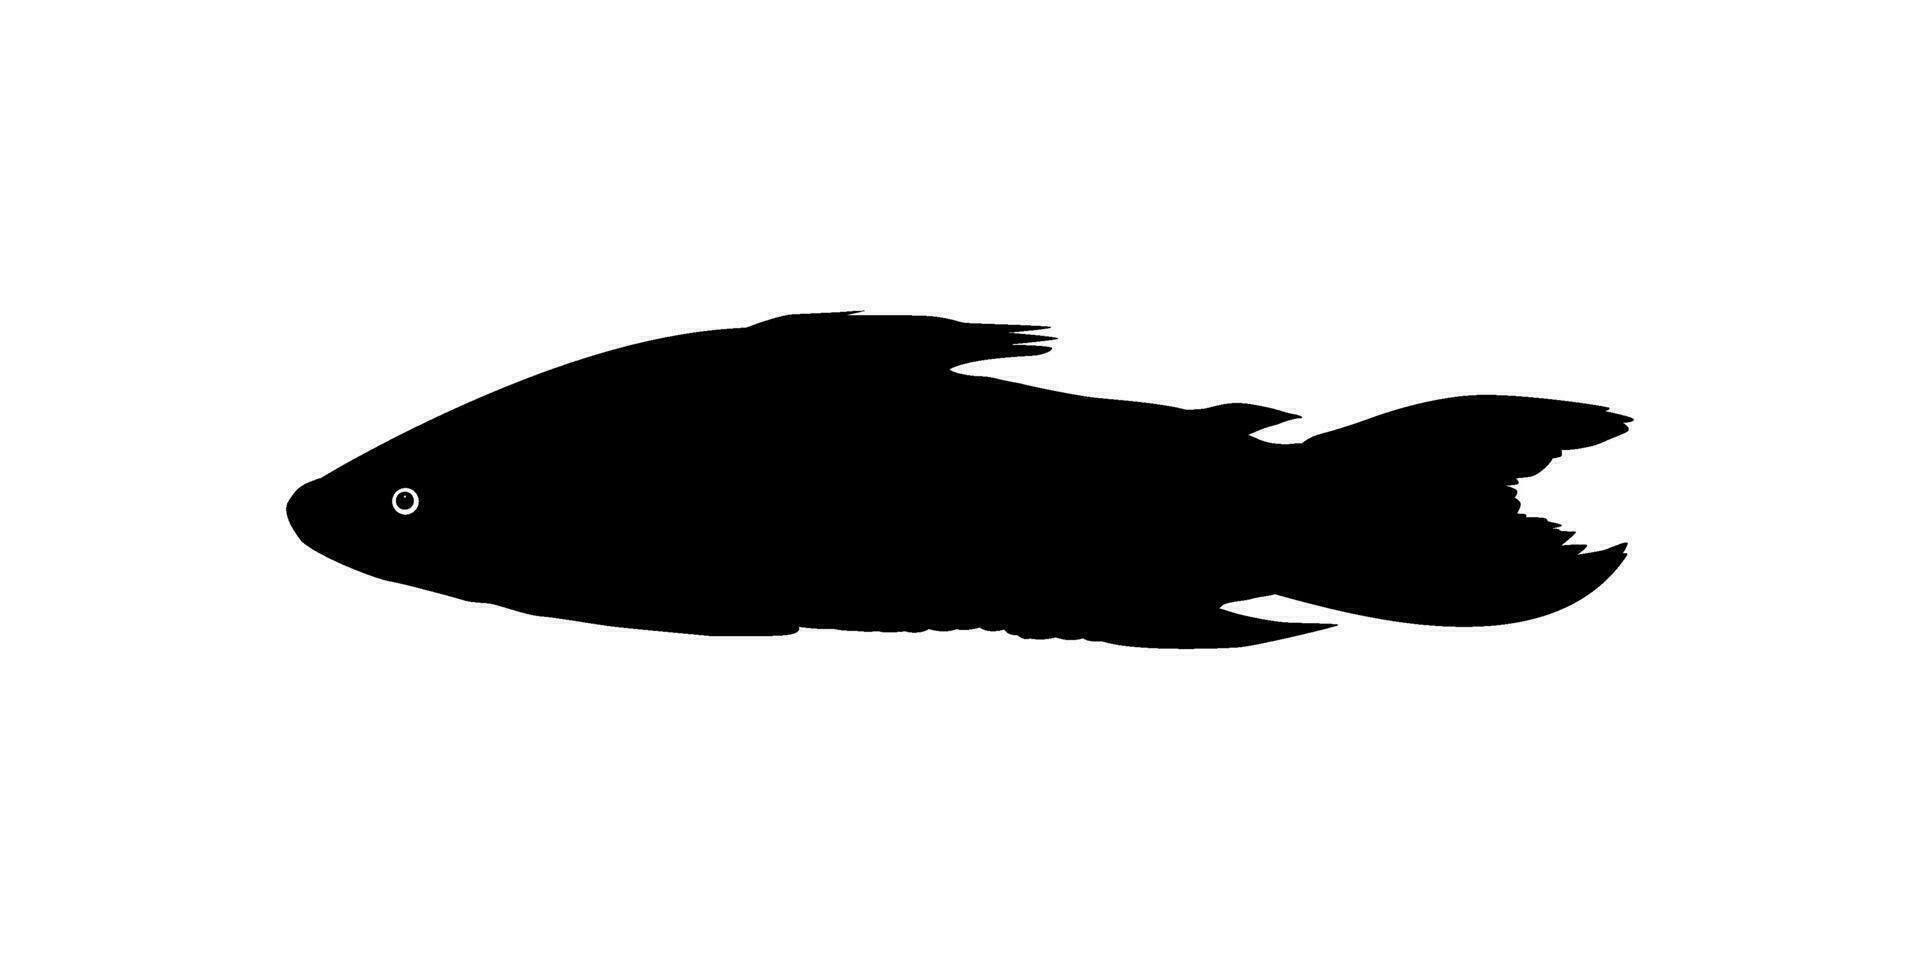 silhueta do a a kwi kwi ou hoplosterno litoral é uma espécies do blindado peixe-gato a partir de a callichthyidae família. vetor ilustração